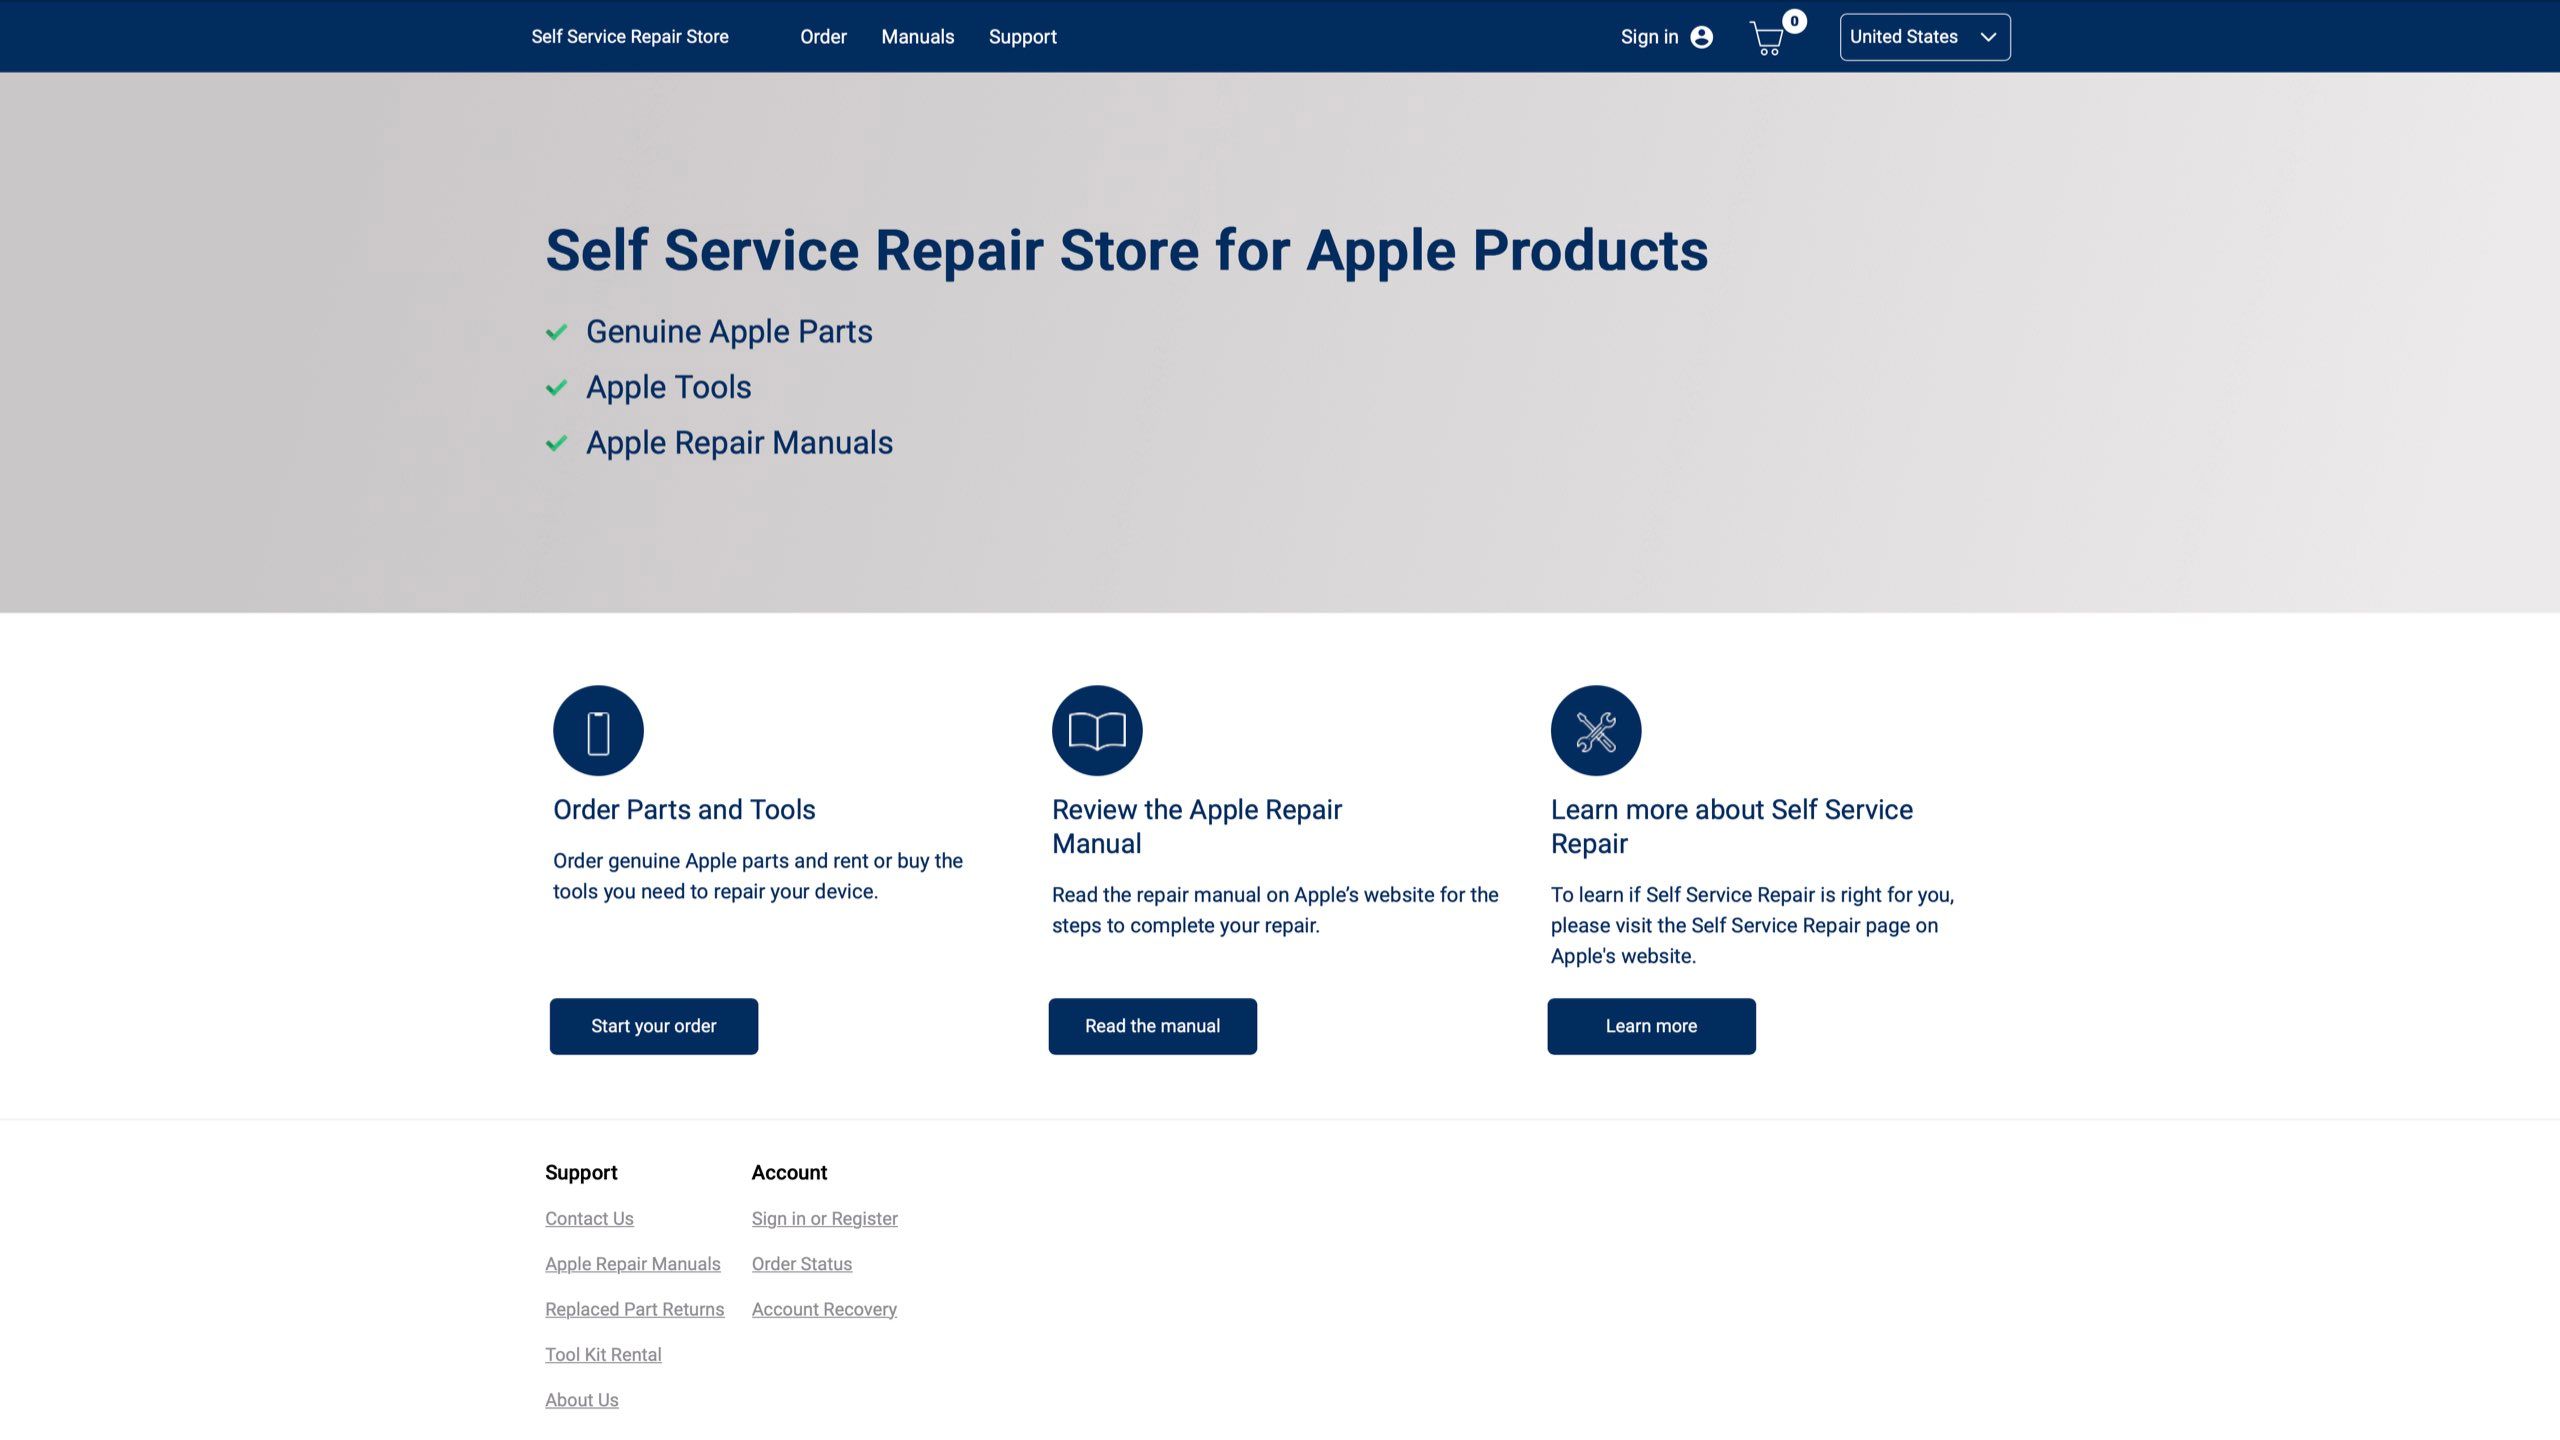 ایپل مصنوعات کی ویب سائٹ کے لیے سیلف سروس ریپئر اسٹور کا اسکرین شاٹ۔